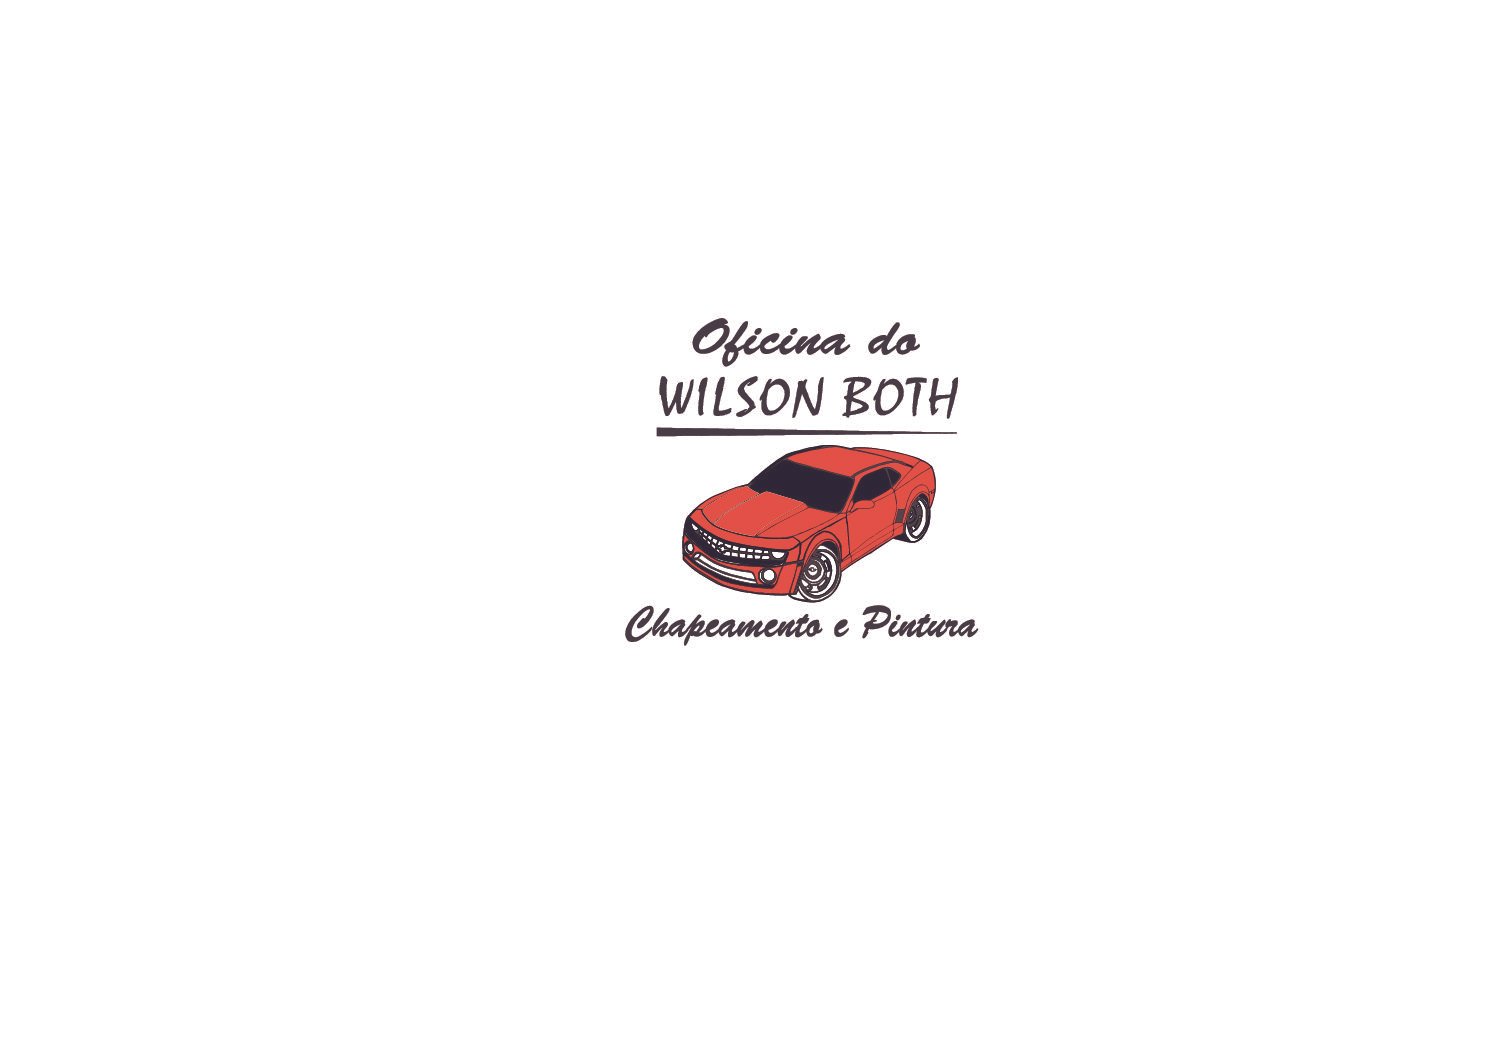 Camisetas com logo serigrafada para Oficina do Wilson Both, da cidade de Ibirubá/RS.